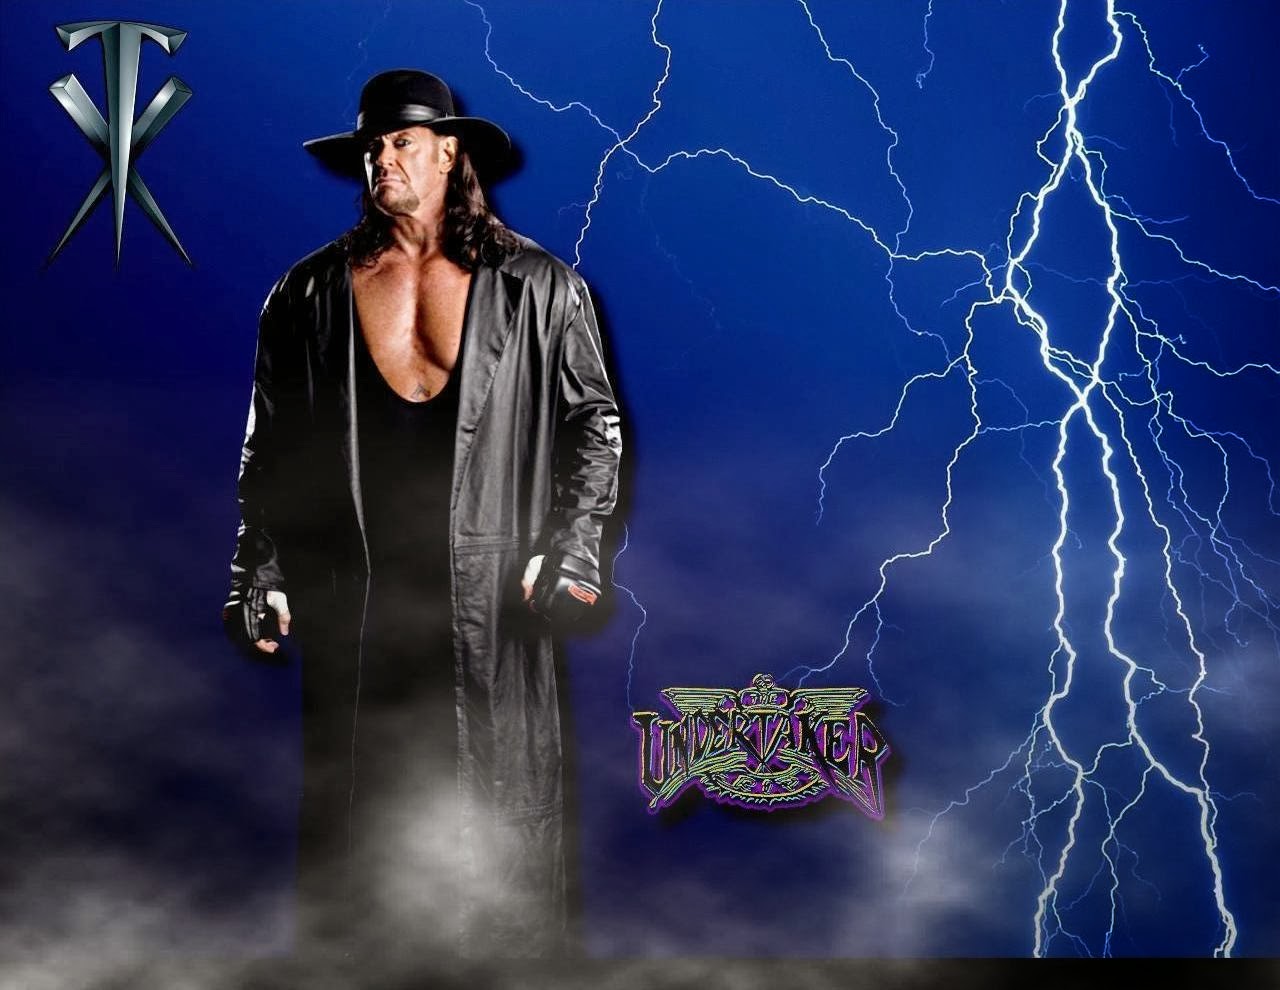 Undertaker Hd Wallpapers Free Download WWE HD WALLPAPER FREE